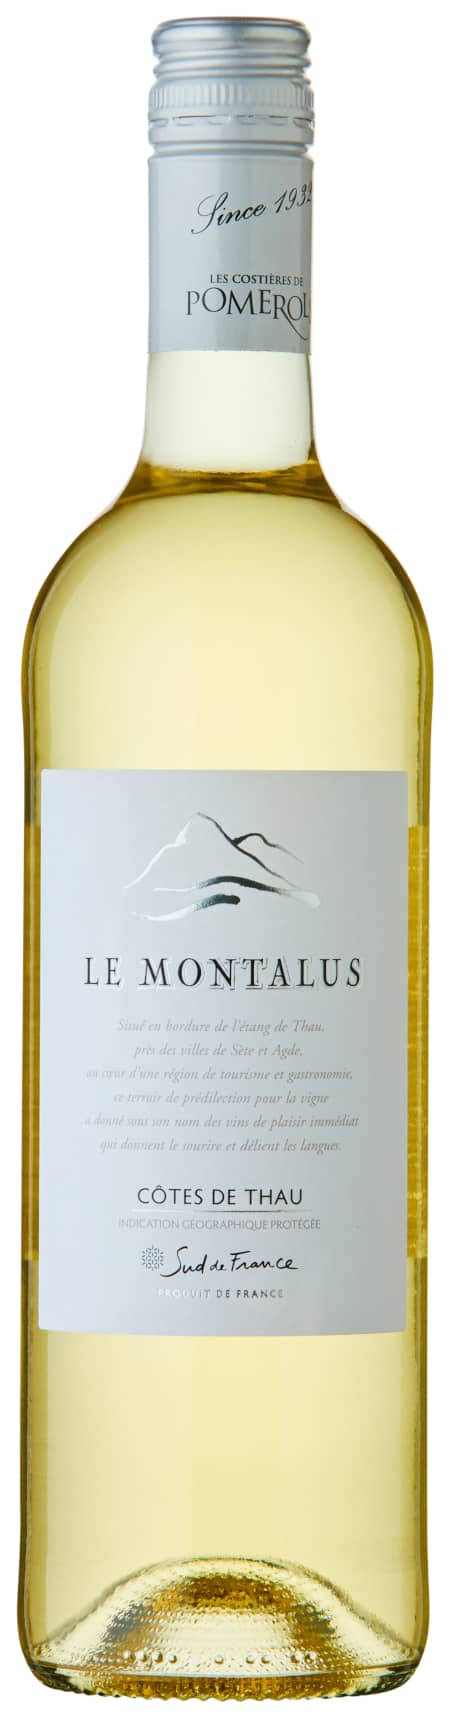 Le Montalus IGP Côtes de Thau Blanc